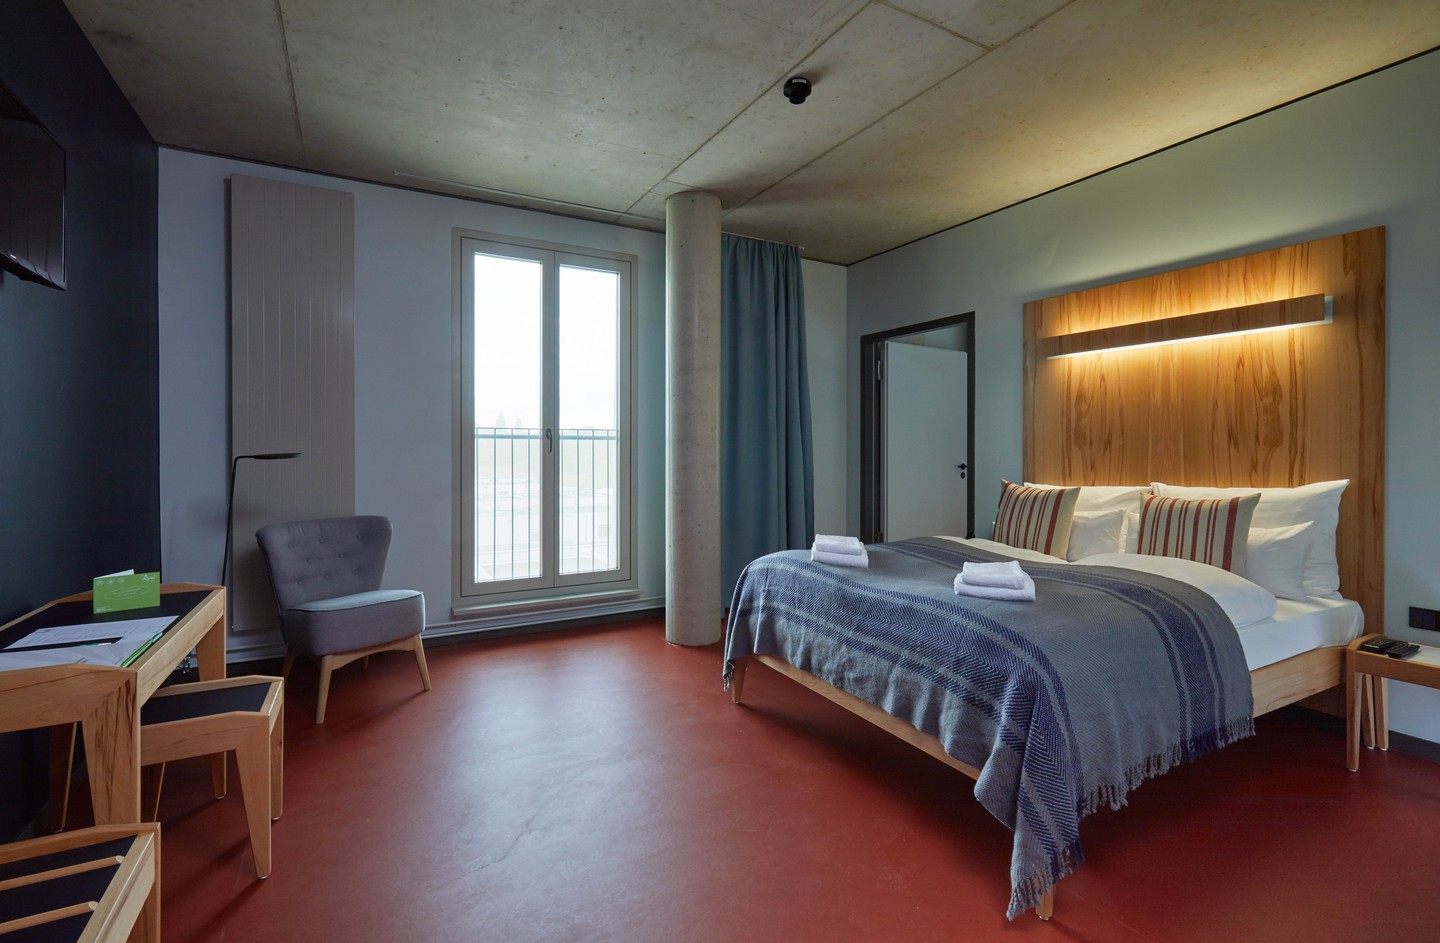 Modern eingerichtetes Zimmer mit großem schlichten Holzbett. Das Design wird bestimmt durch klare Linien aus Holz, Beton und Blau- und Rottönen. 
				